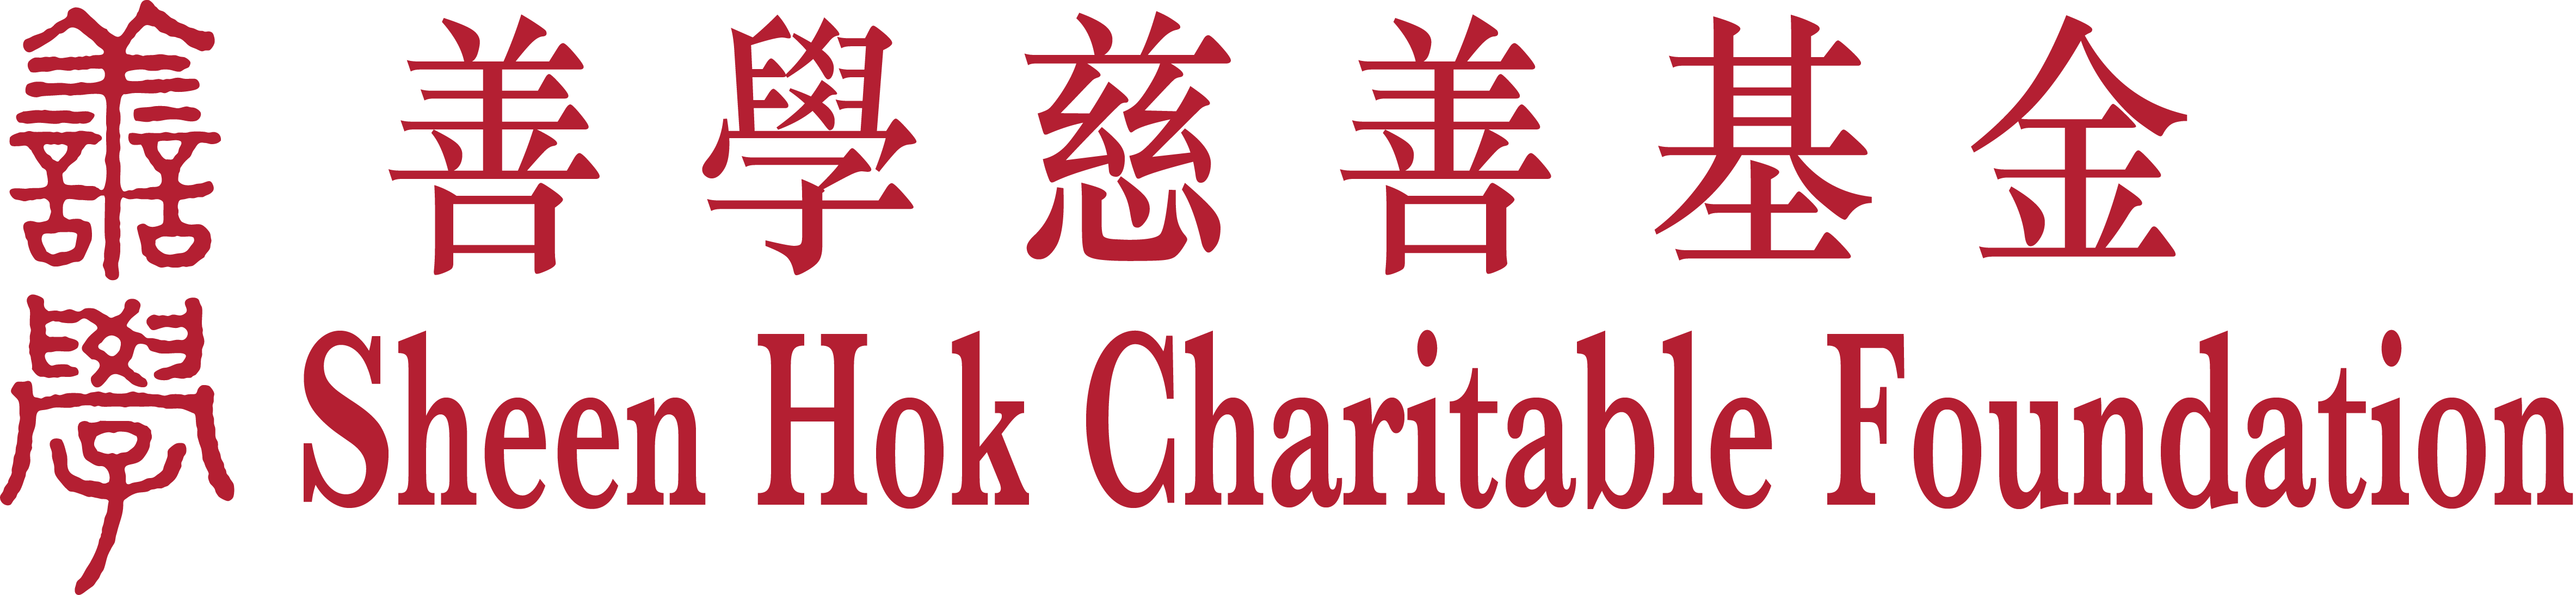 Sheen Hok Charitable Foundation logo